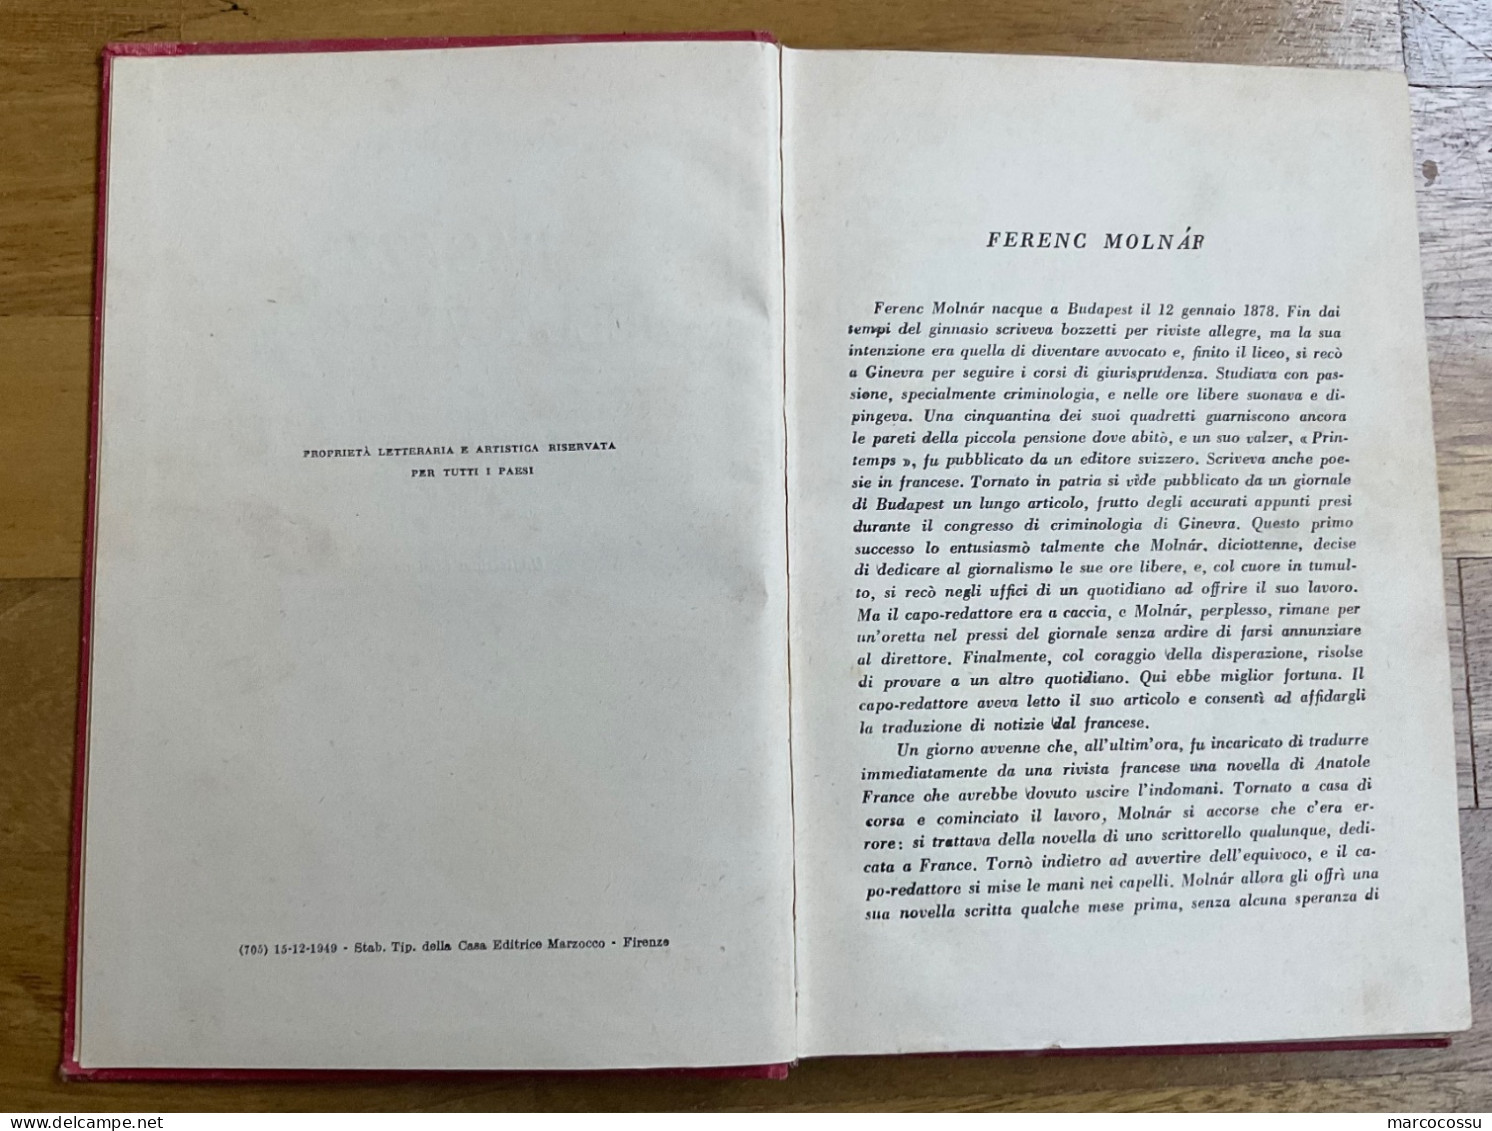 Libro Del 1949 I Ragazzi Della Via Pal - Clásicos